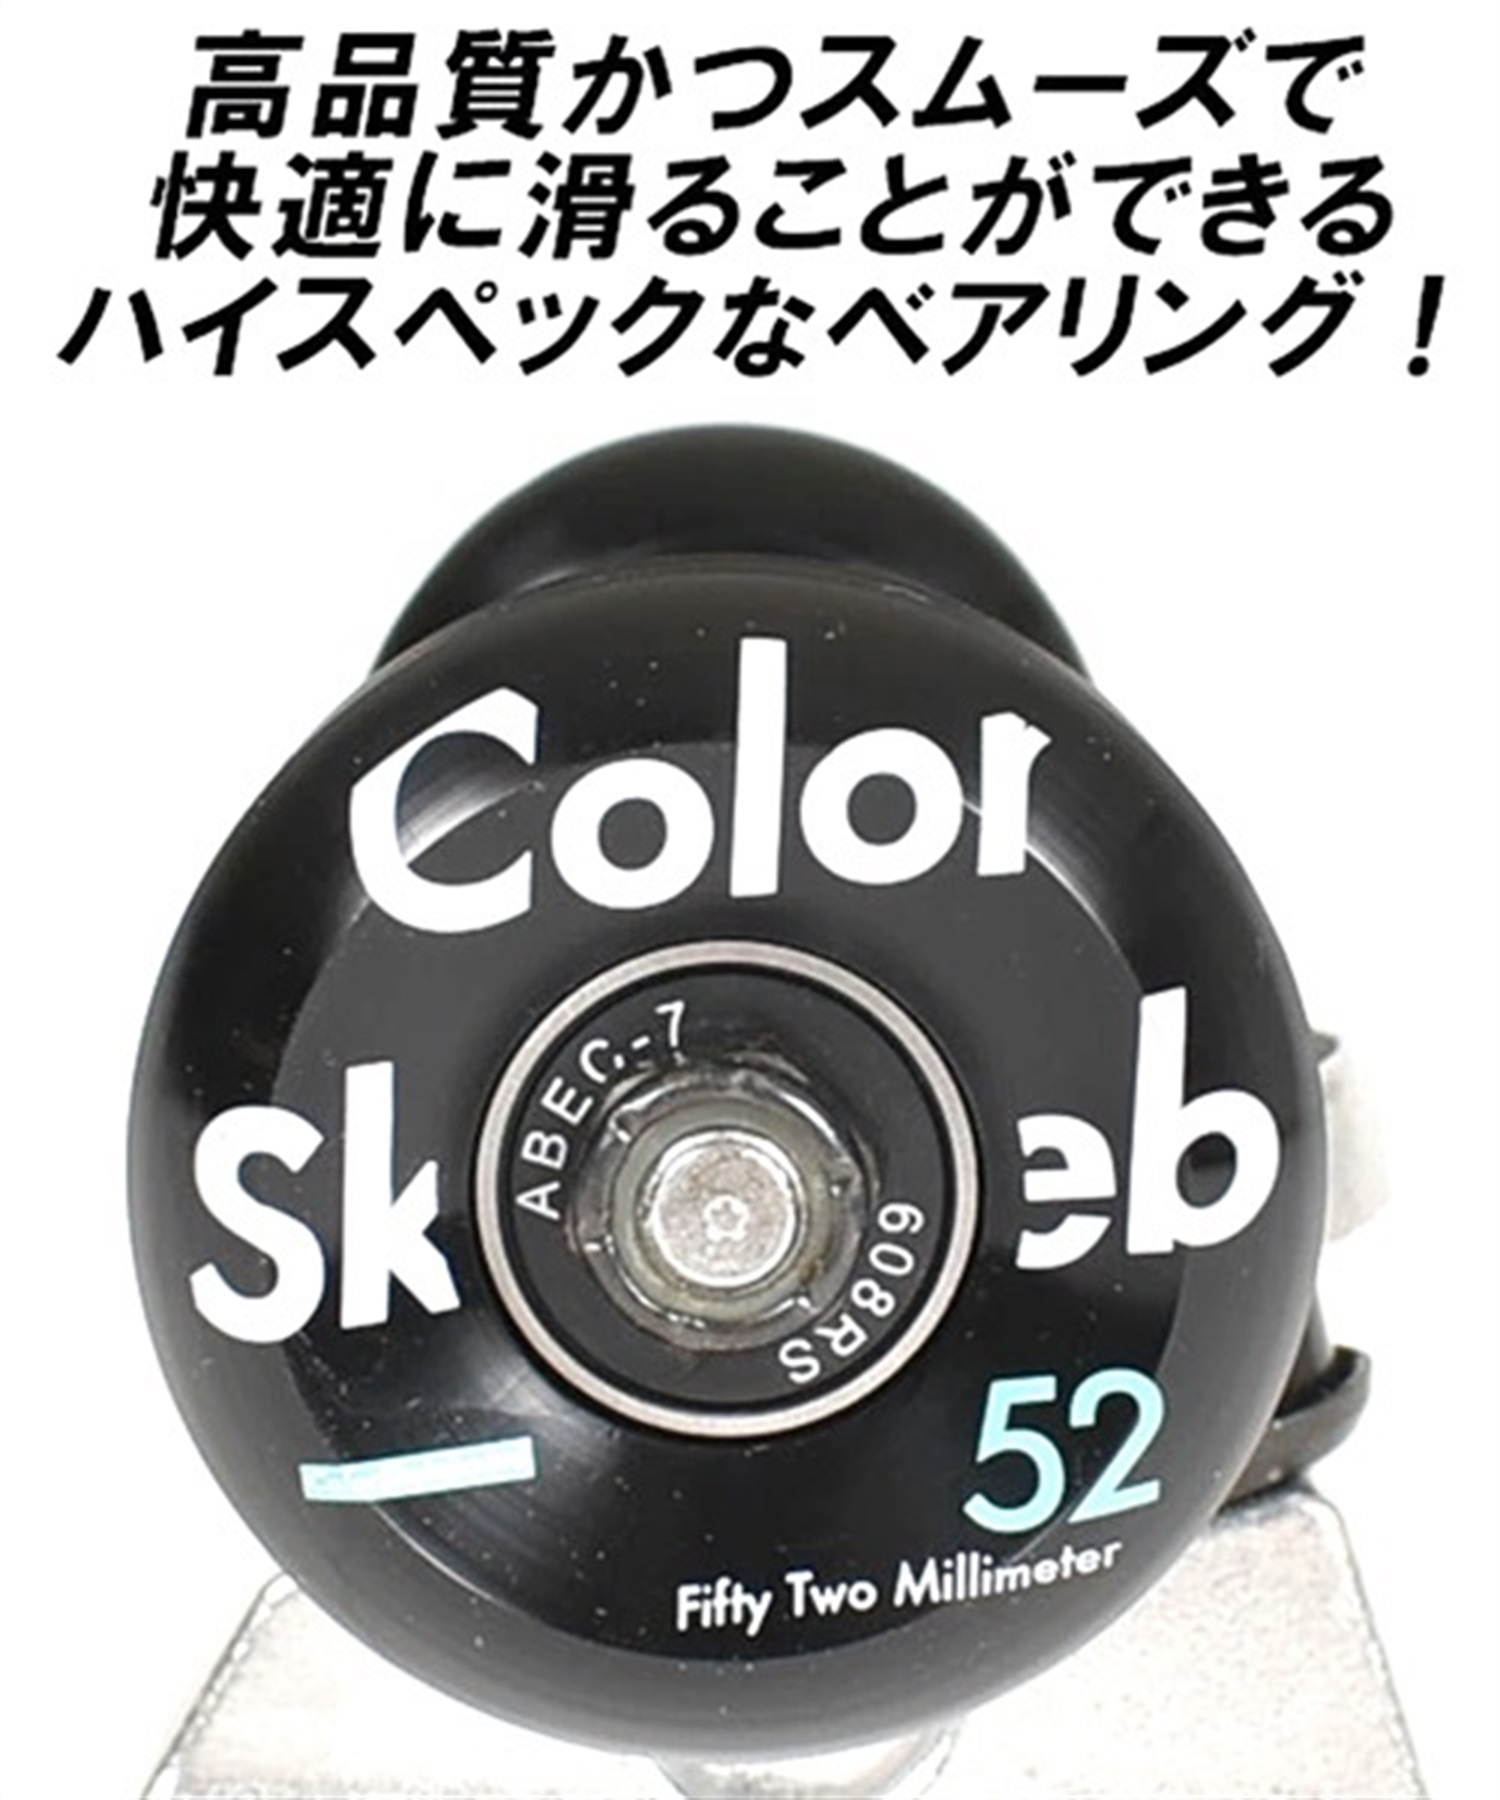 スケートボード コンプリートセット ColorSkateboard カラースケートボード COLOR COMPLETE BL オンラインストア限定   完成品 組み立て調整済み(BL-8.0inch)